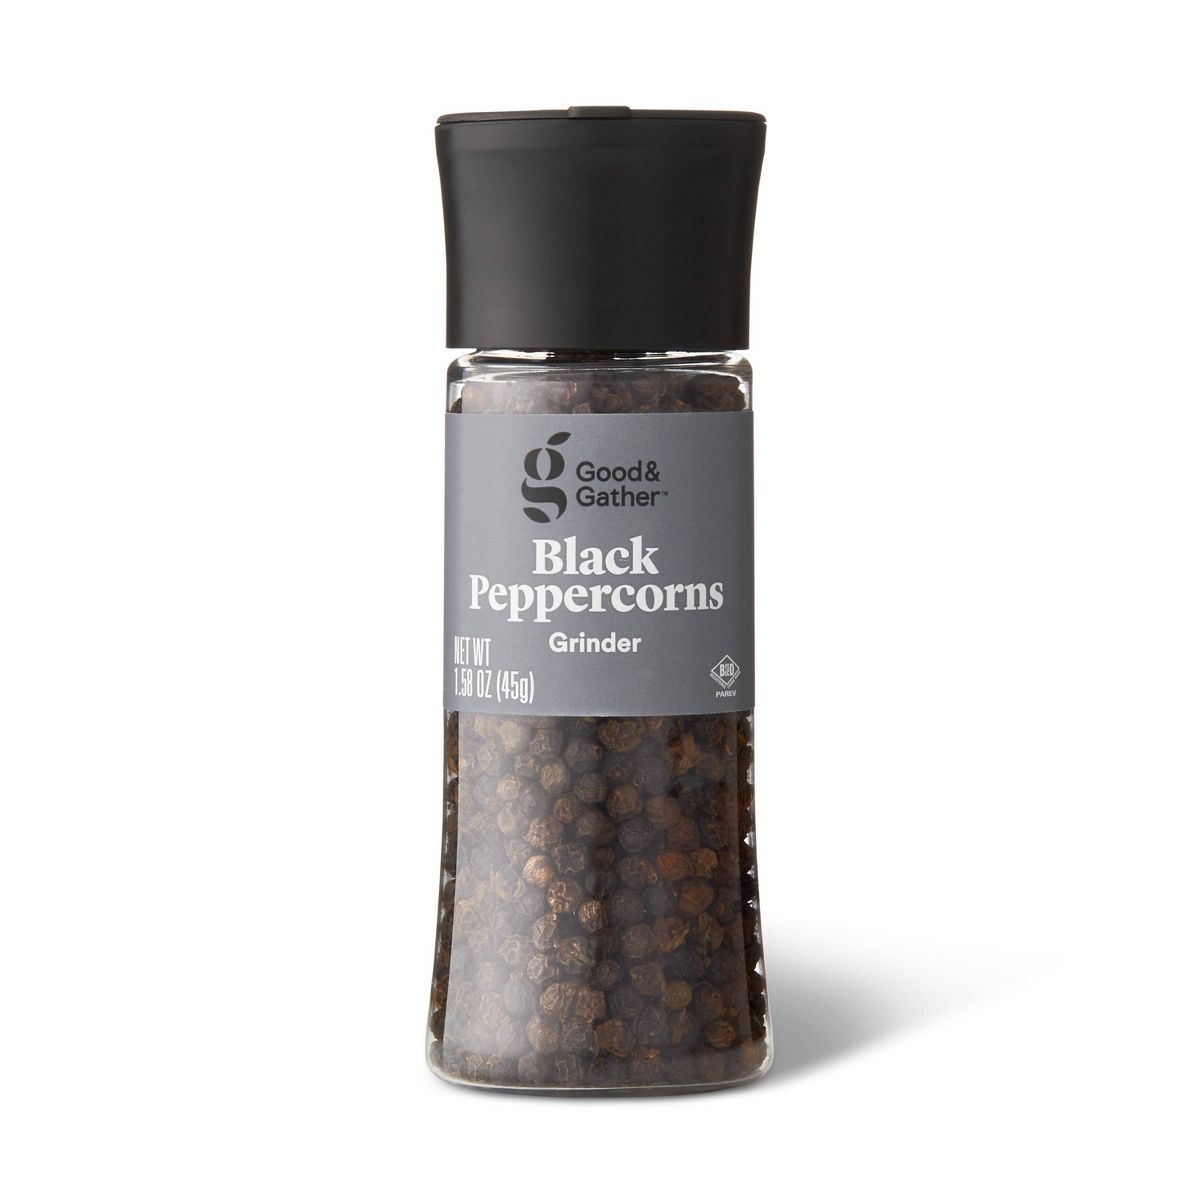 Black Peppercorn Grinder - 1.58oz - Good & Gather™ | Target